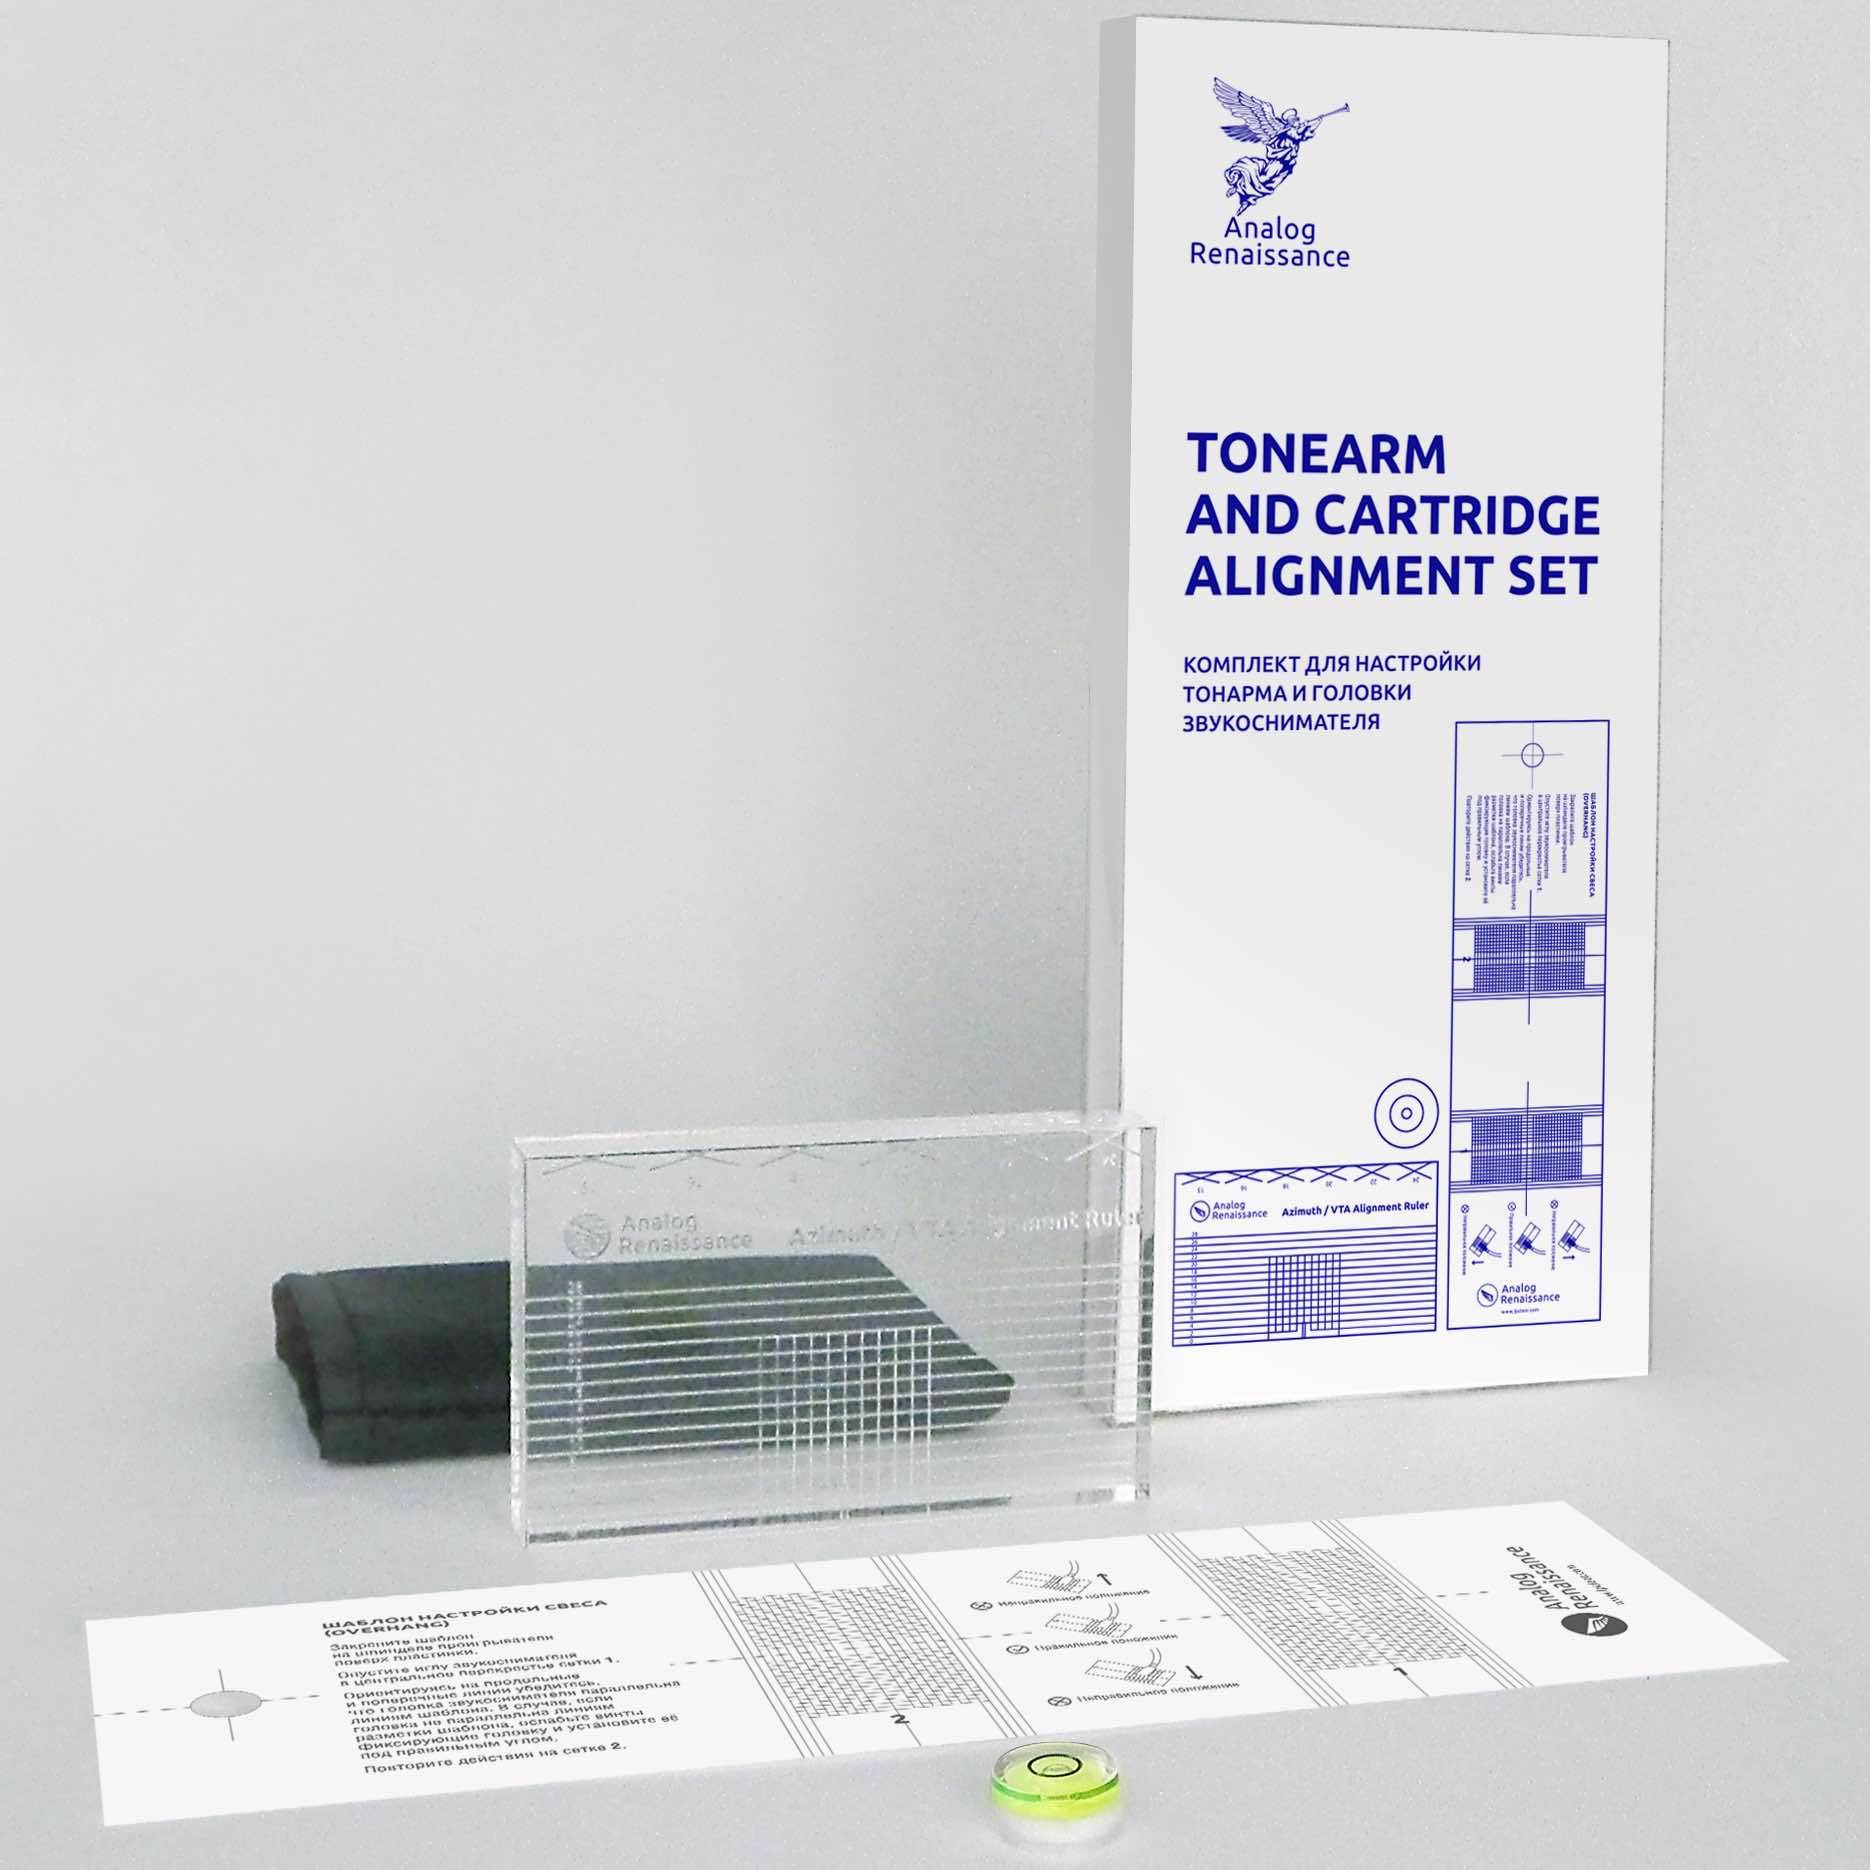 Фото № 1 Analog Renaissance Tonearm and Cartridge Alignment Set - цены, наличие, отзывы в интернет-магазине